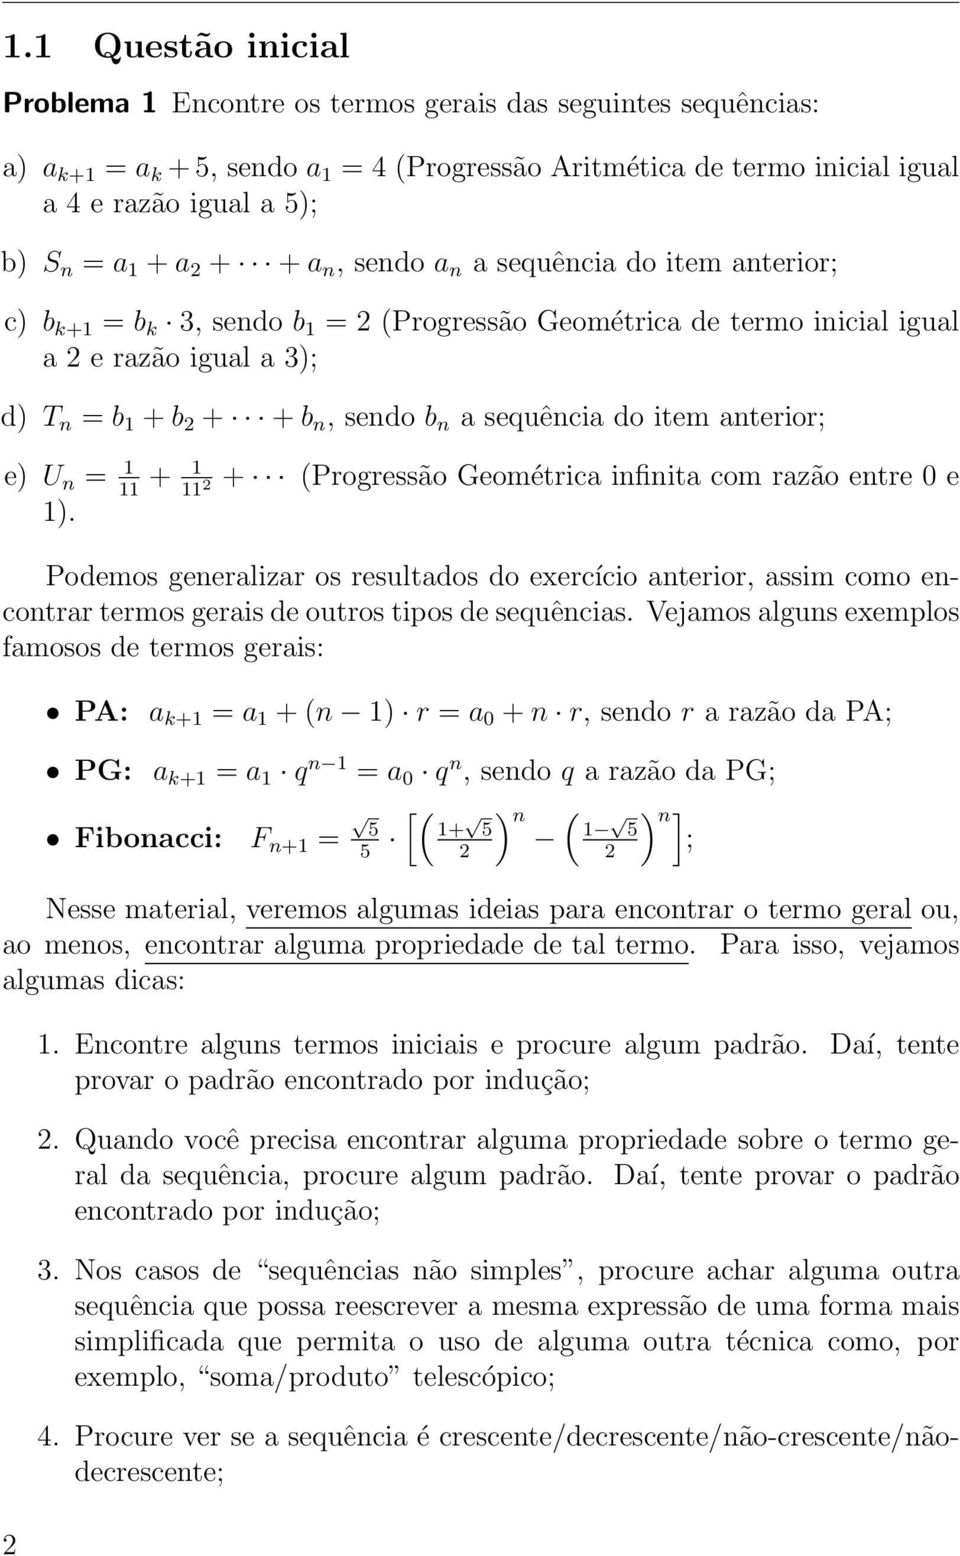 item anterior; e) U n = 1 11 + 1 11 + (Progressão Geométrica infinita com razão entre 0 e 1).